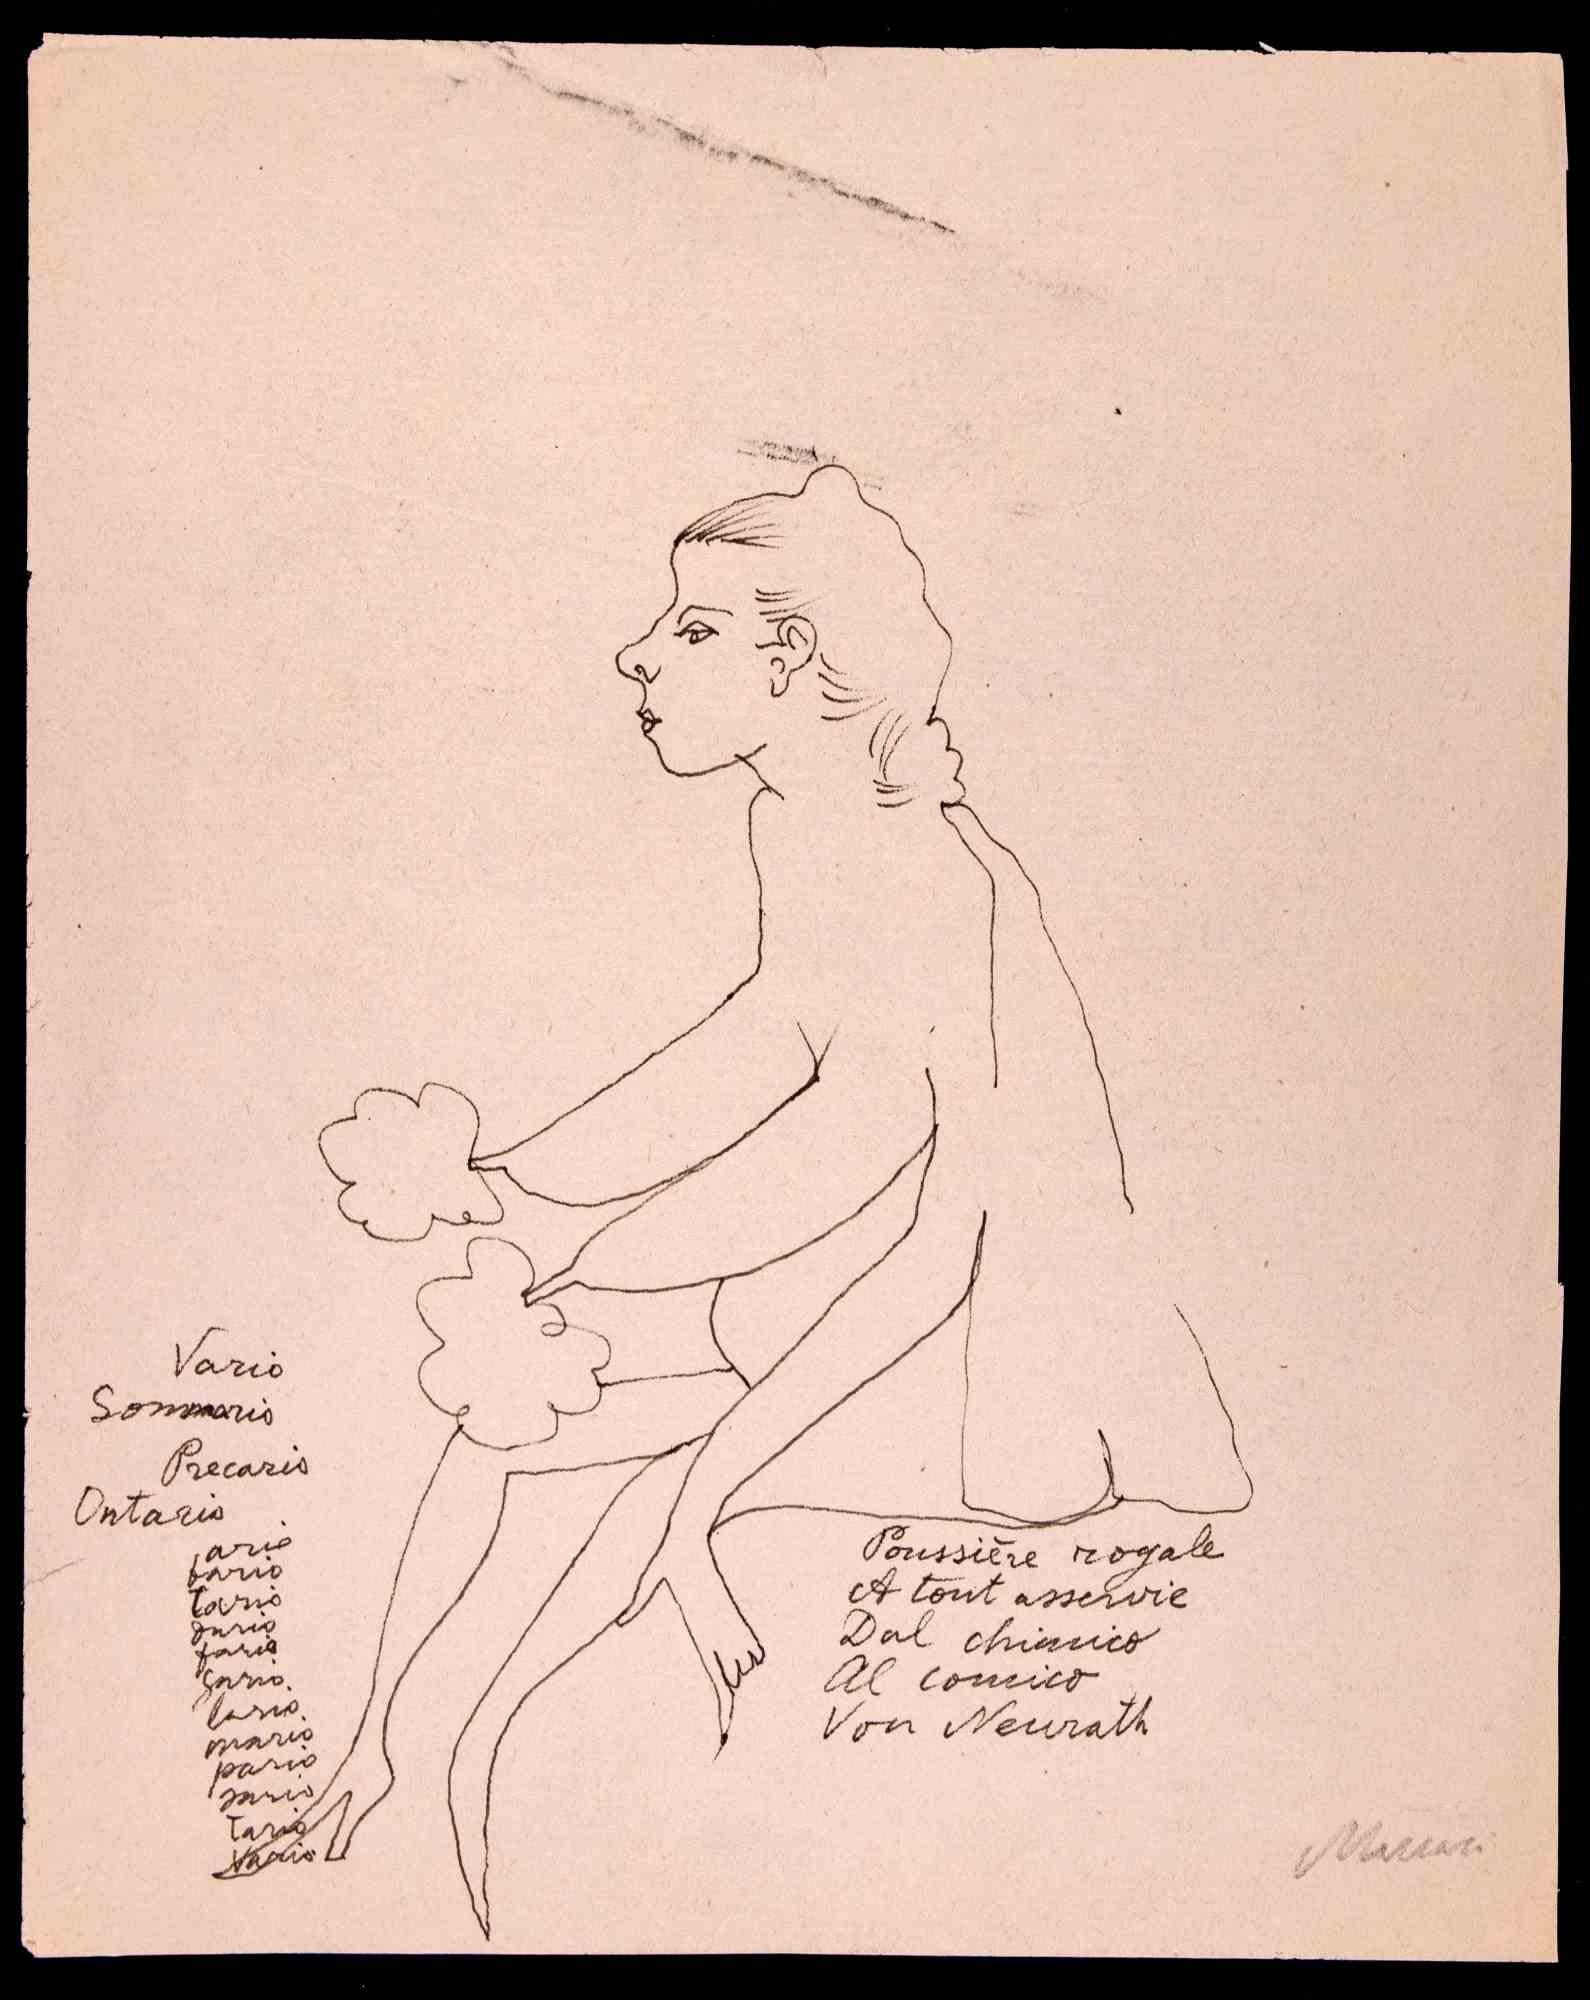 Nude of Woman ist eine Tuschezeichnung von Mino Maccari (1924-1989) aus den 1970er Jahren.

Handsigniert am unteren Rand.

Guter Zustand auf einem cremefarbenen Papier.

Mino Maccari (Siena, 1924-Rom, 16. Juni 1989) war ein italienischer